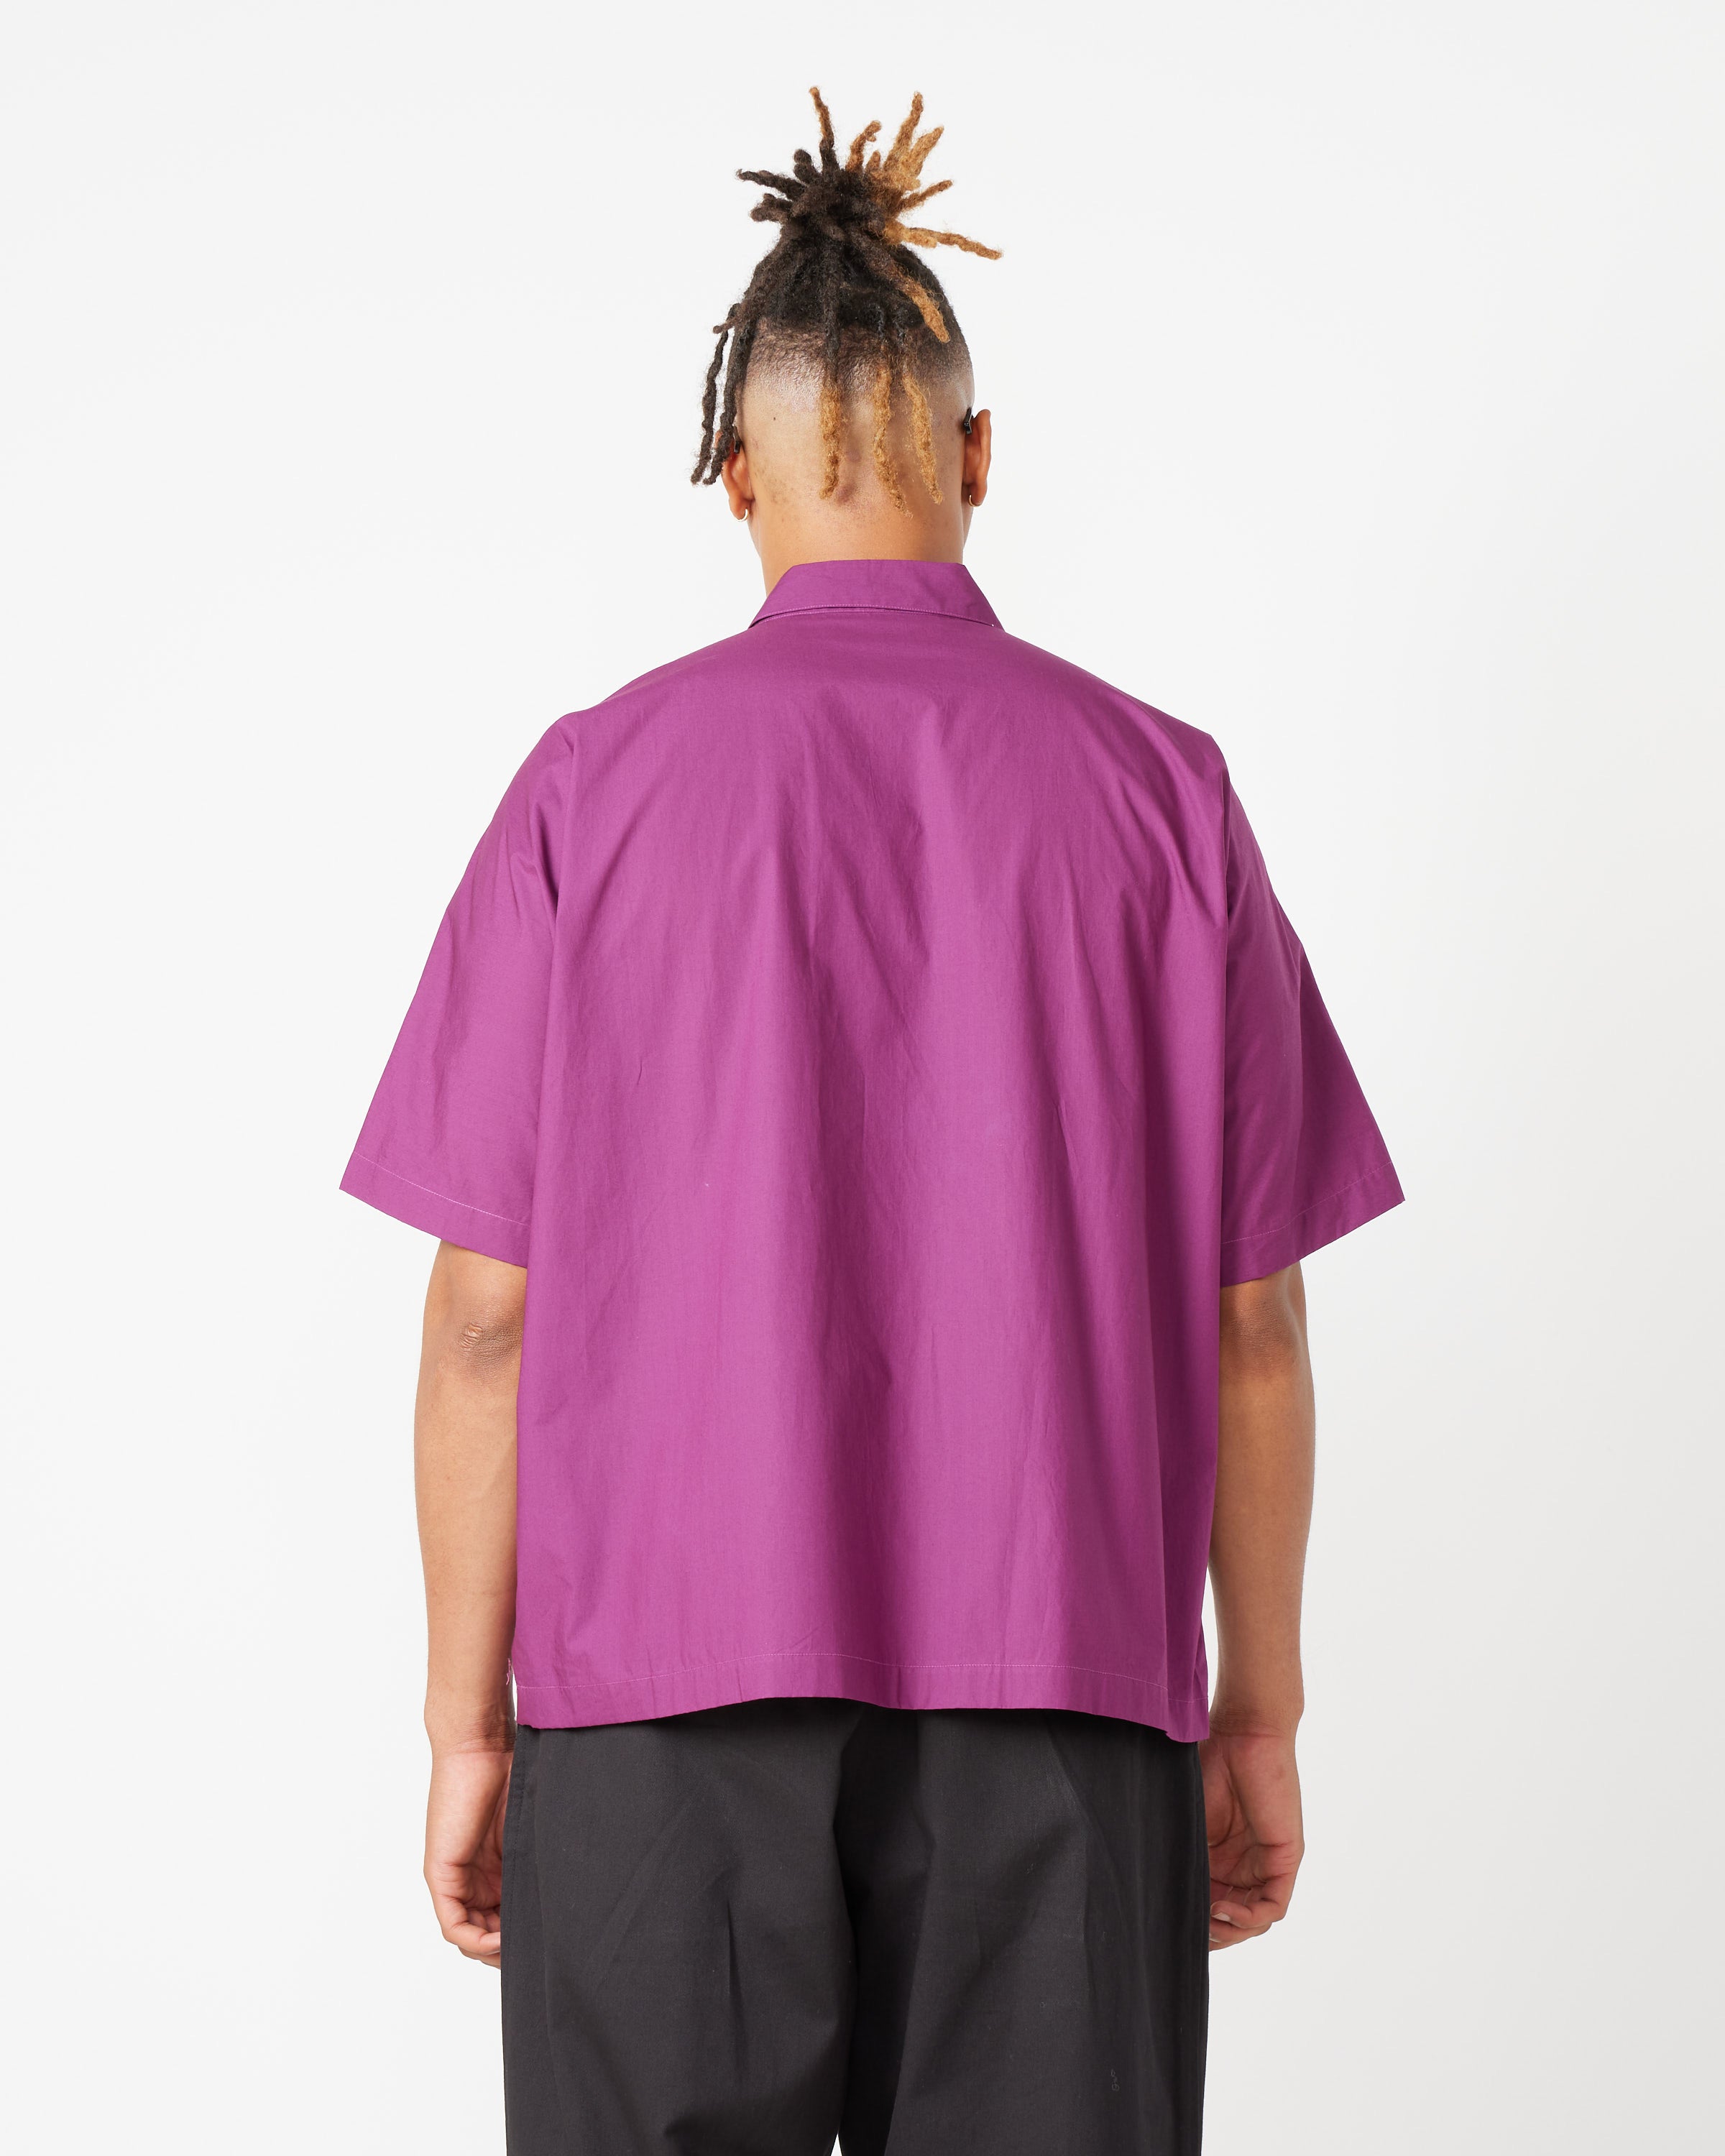 Boxy Short-Sleeve Shirt